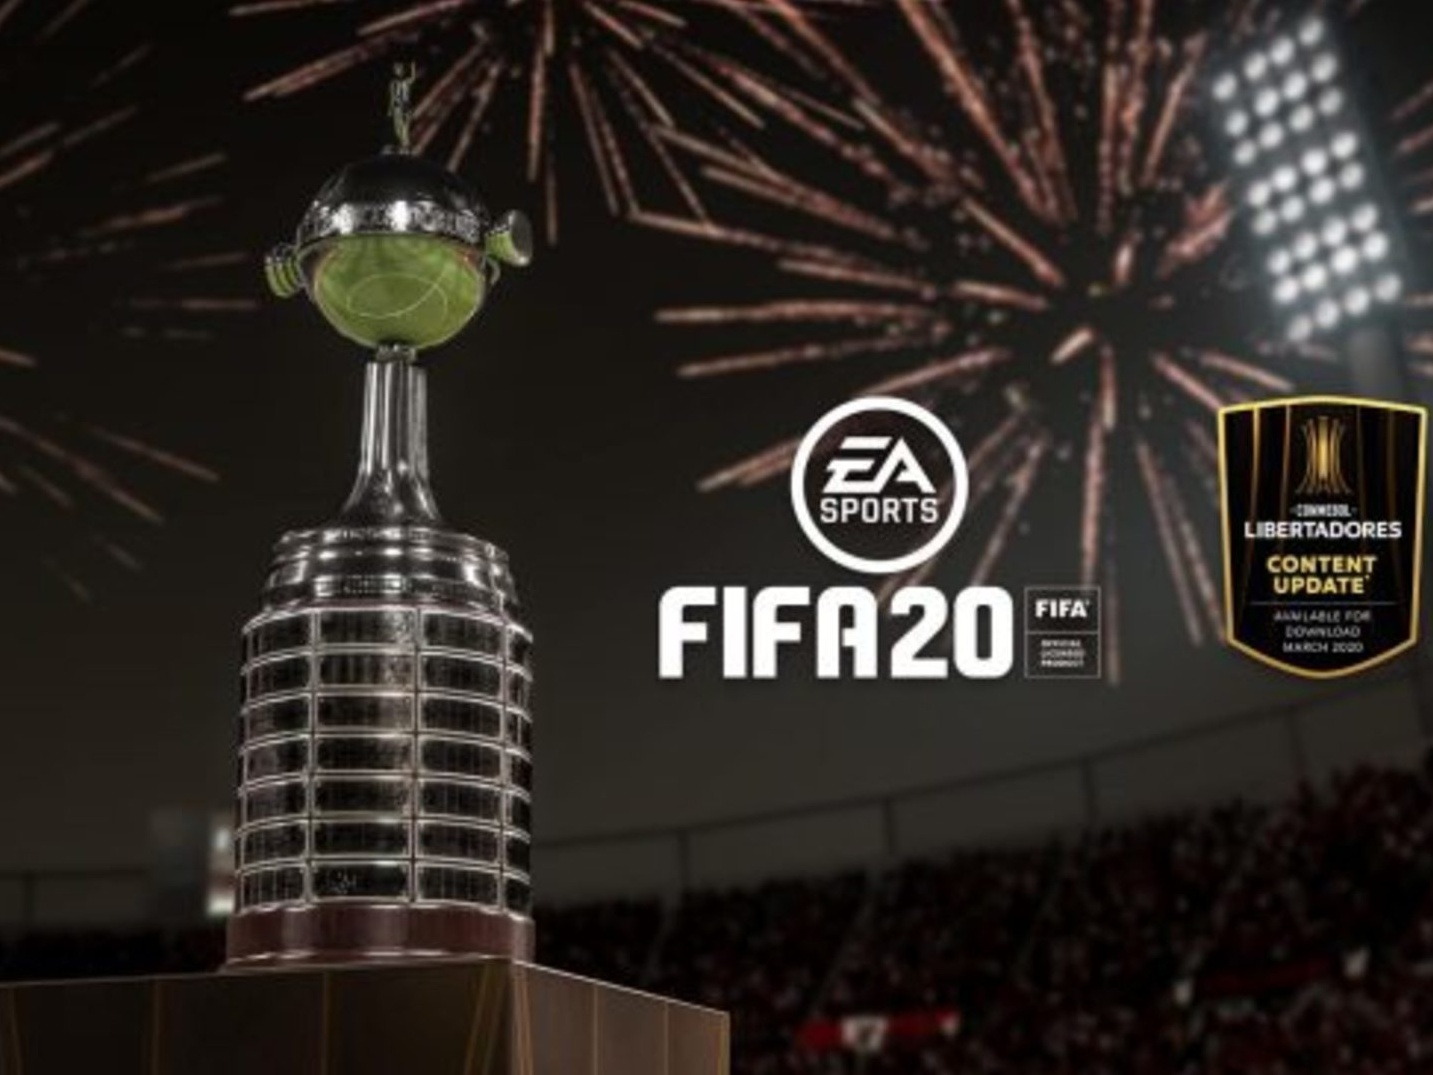 Fifa 17 será lançado com times brasileiros contendo apenas jogadores  genéricos - Olhar Digital